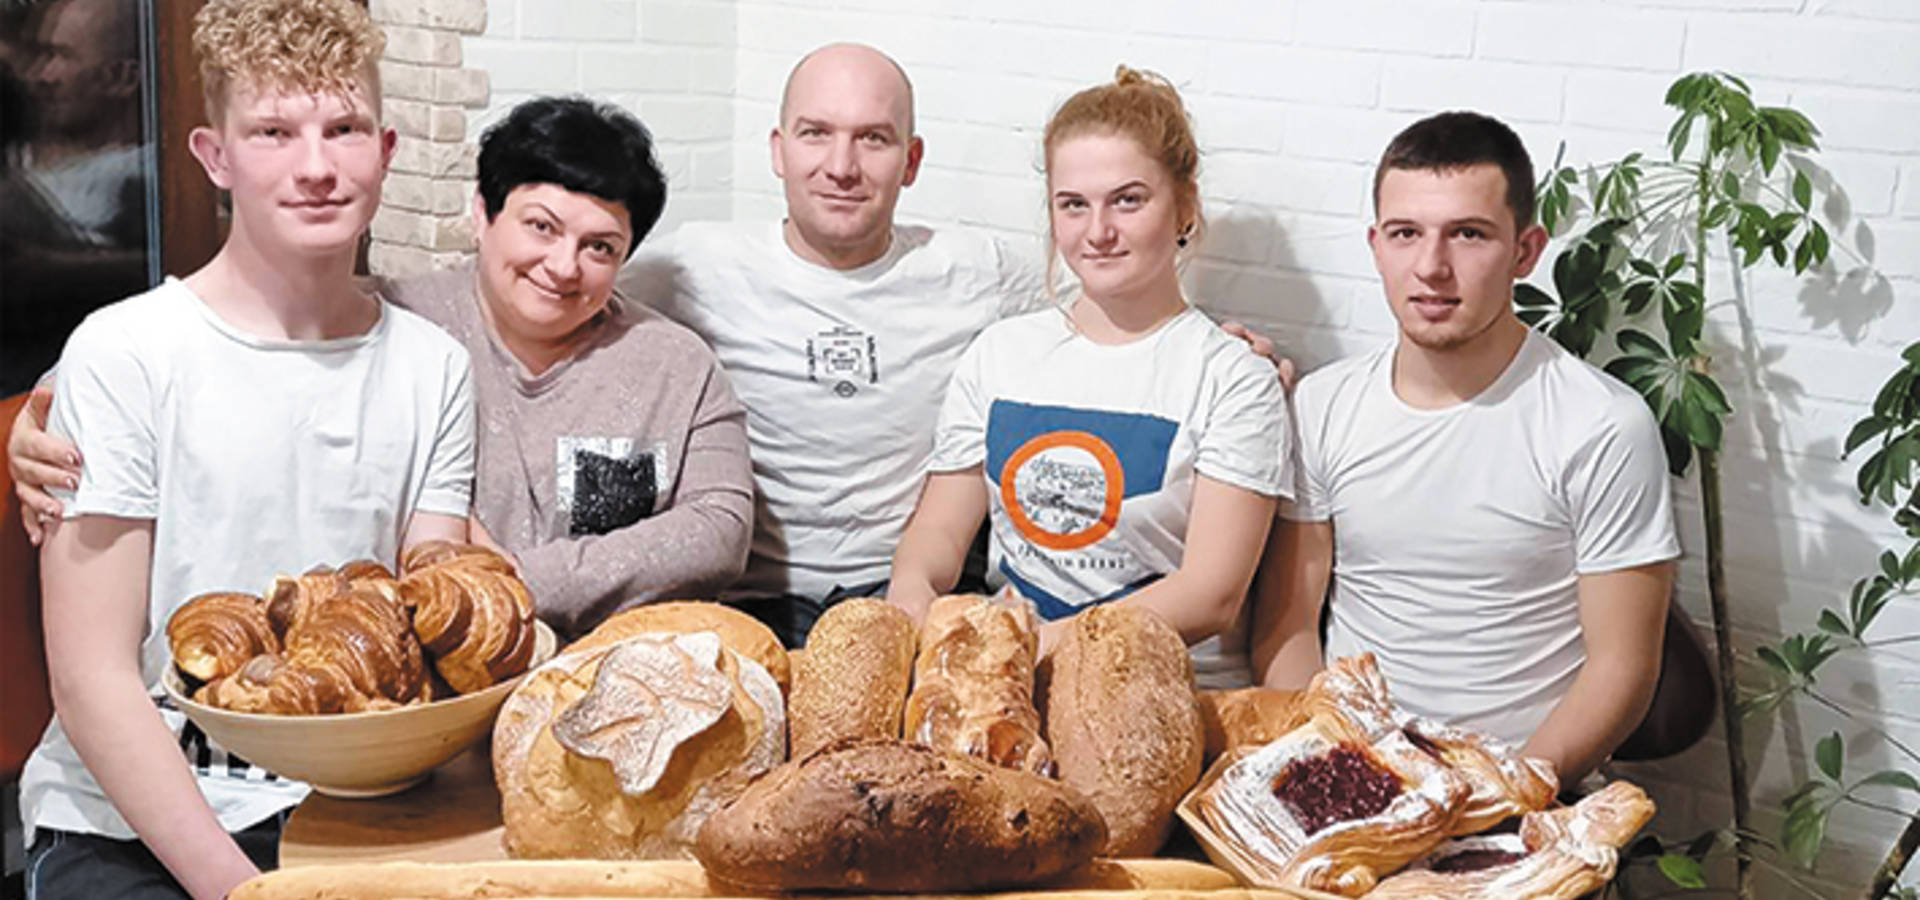 Український хліб із бельгійським корінням виготовляють в Кожухові Хмільницького району на Вінниччині